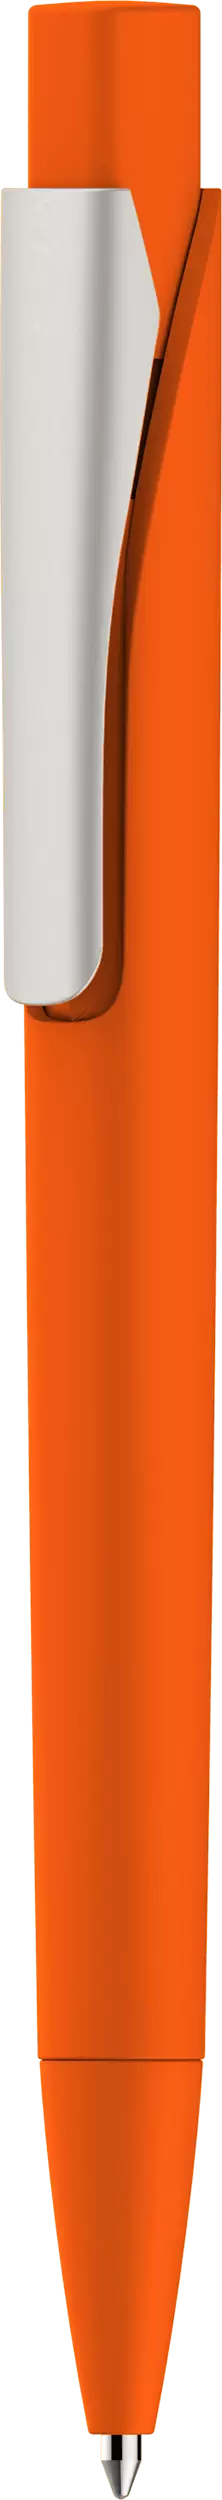 Ручка MASTER SOFT Оранжевая 1040.05